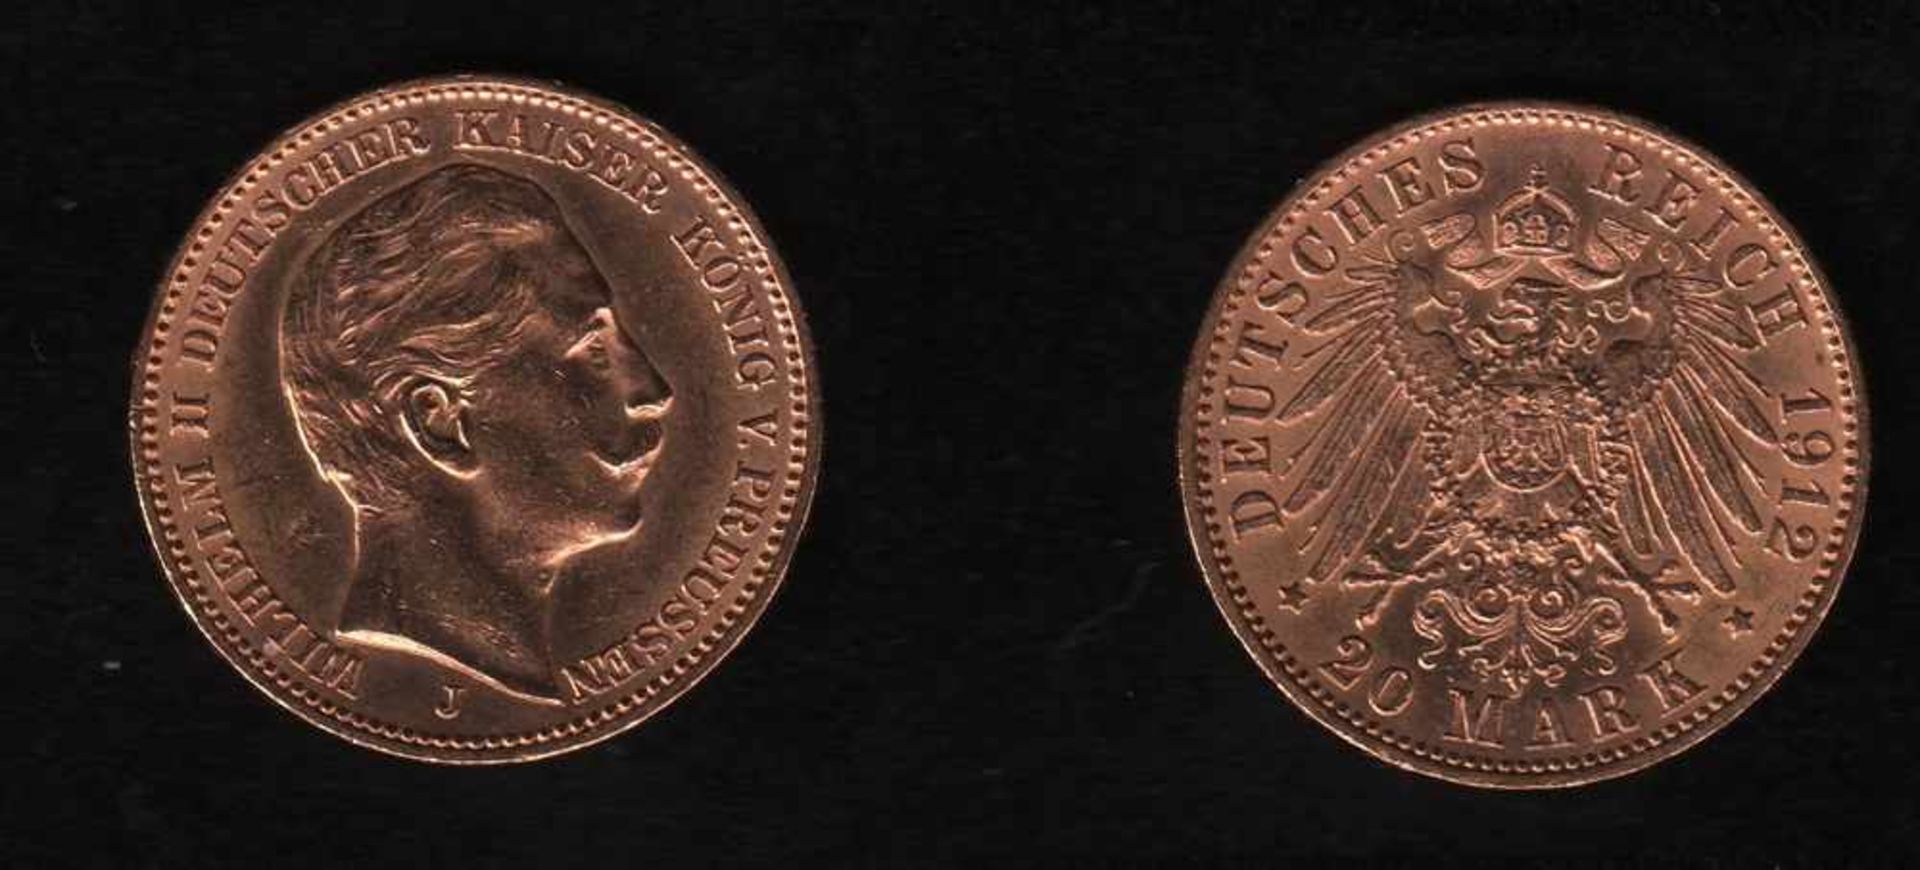 Deutsches Reich. Goldmünze.20 Mark. Wilhelm II., Deutscher Kaiser. J 1912. Vorderseite: Porträt